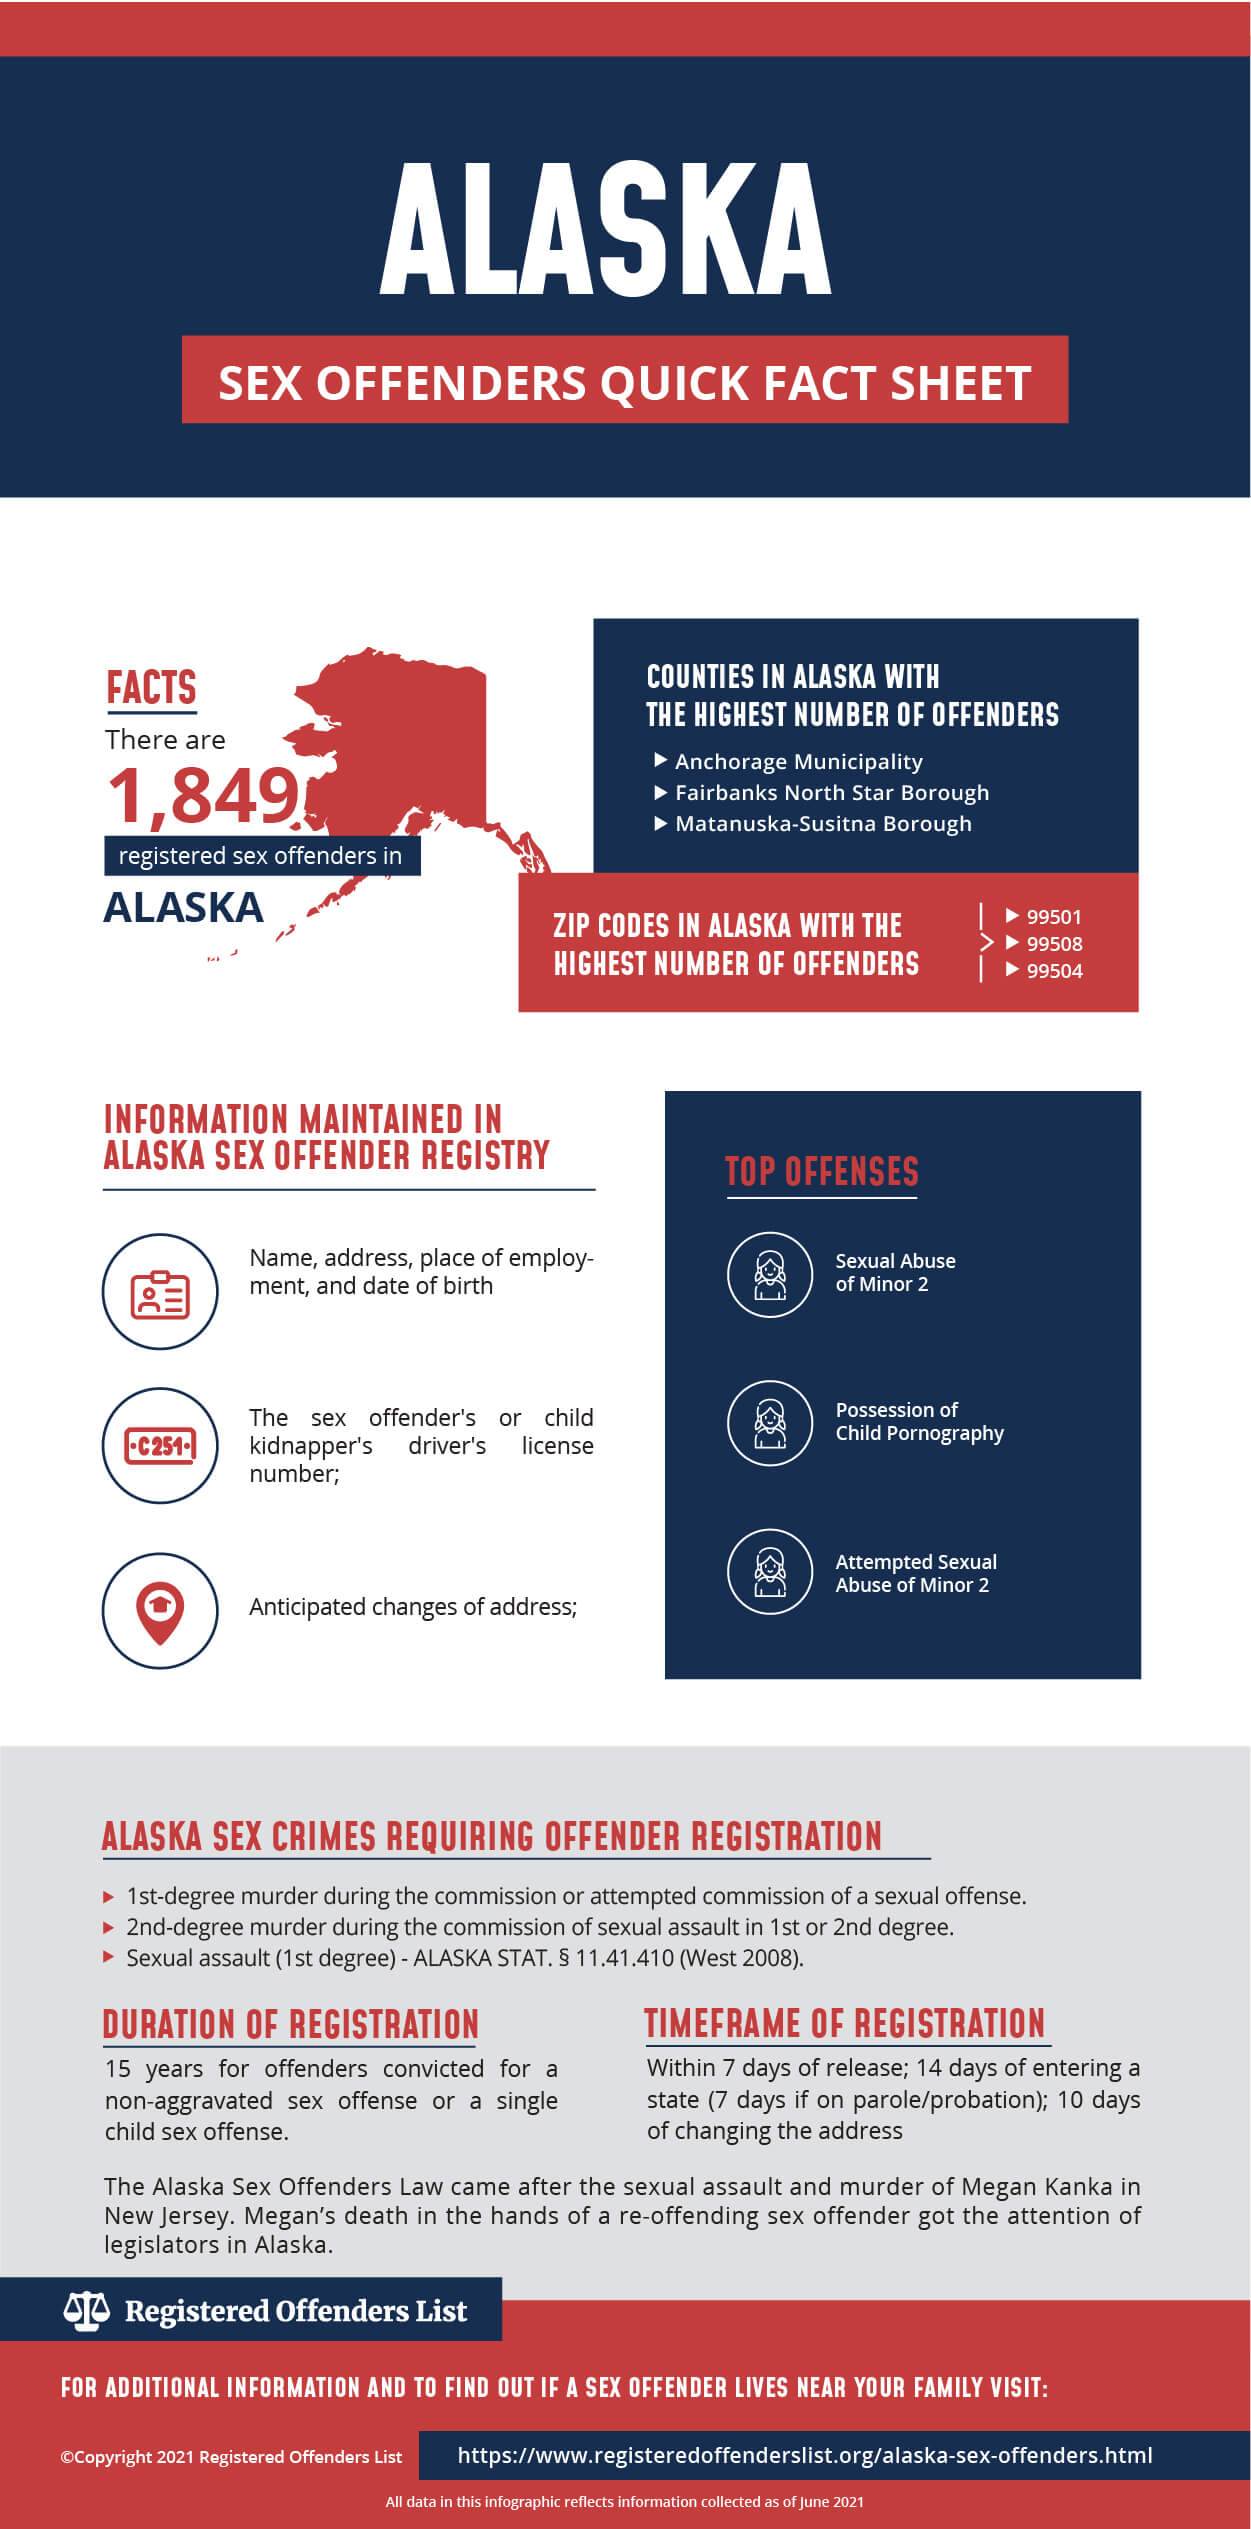 Alaska Sex Offenders Quick Fact Sheet Infographic 